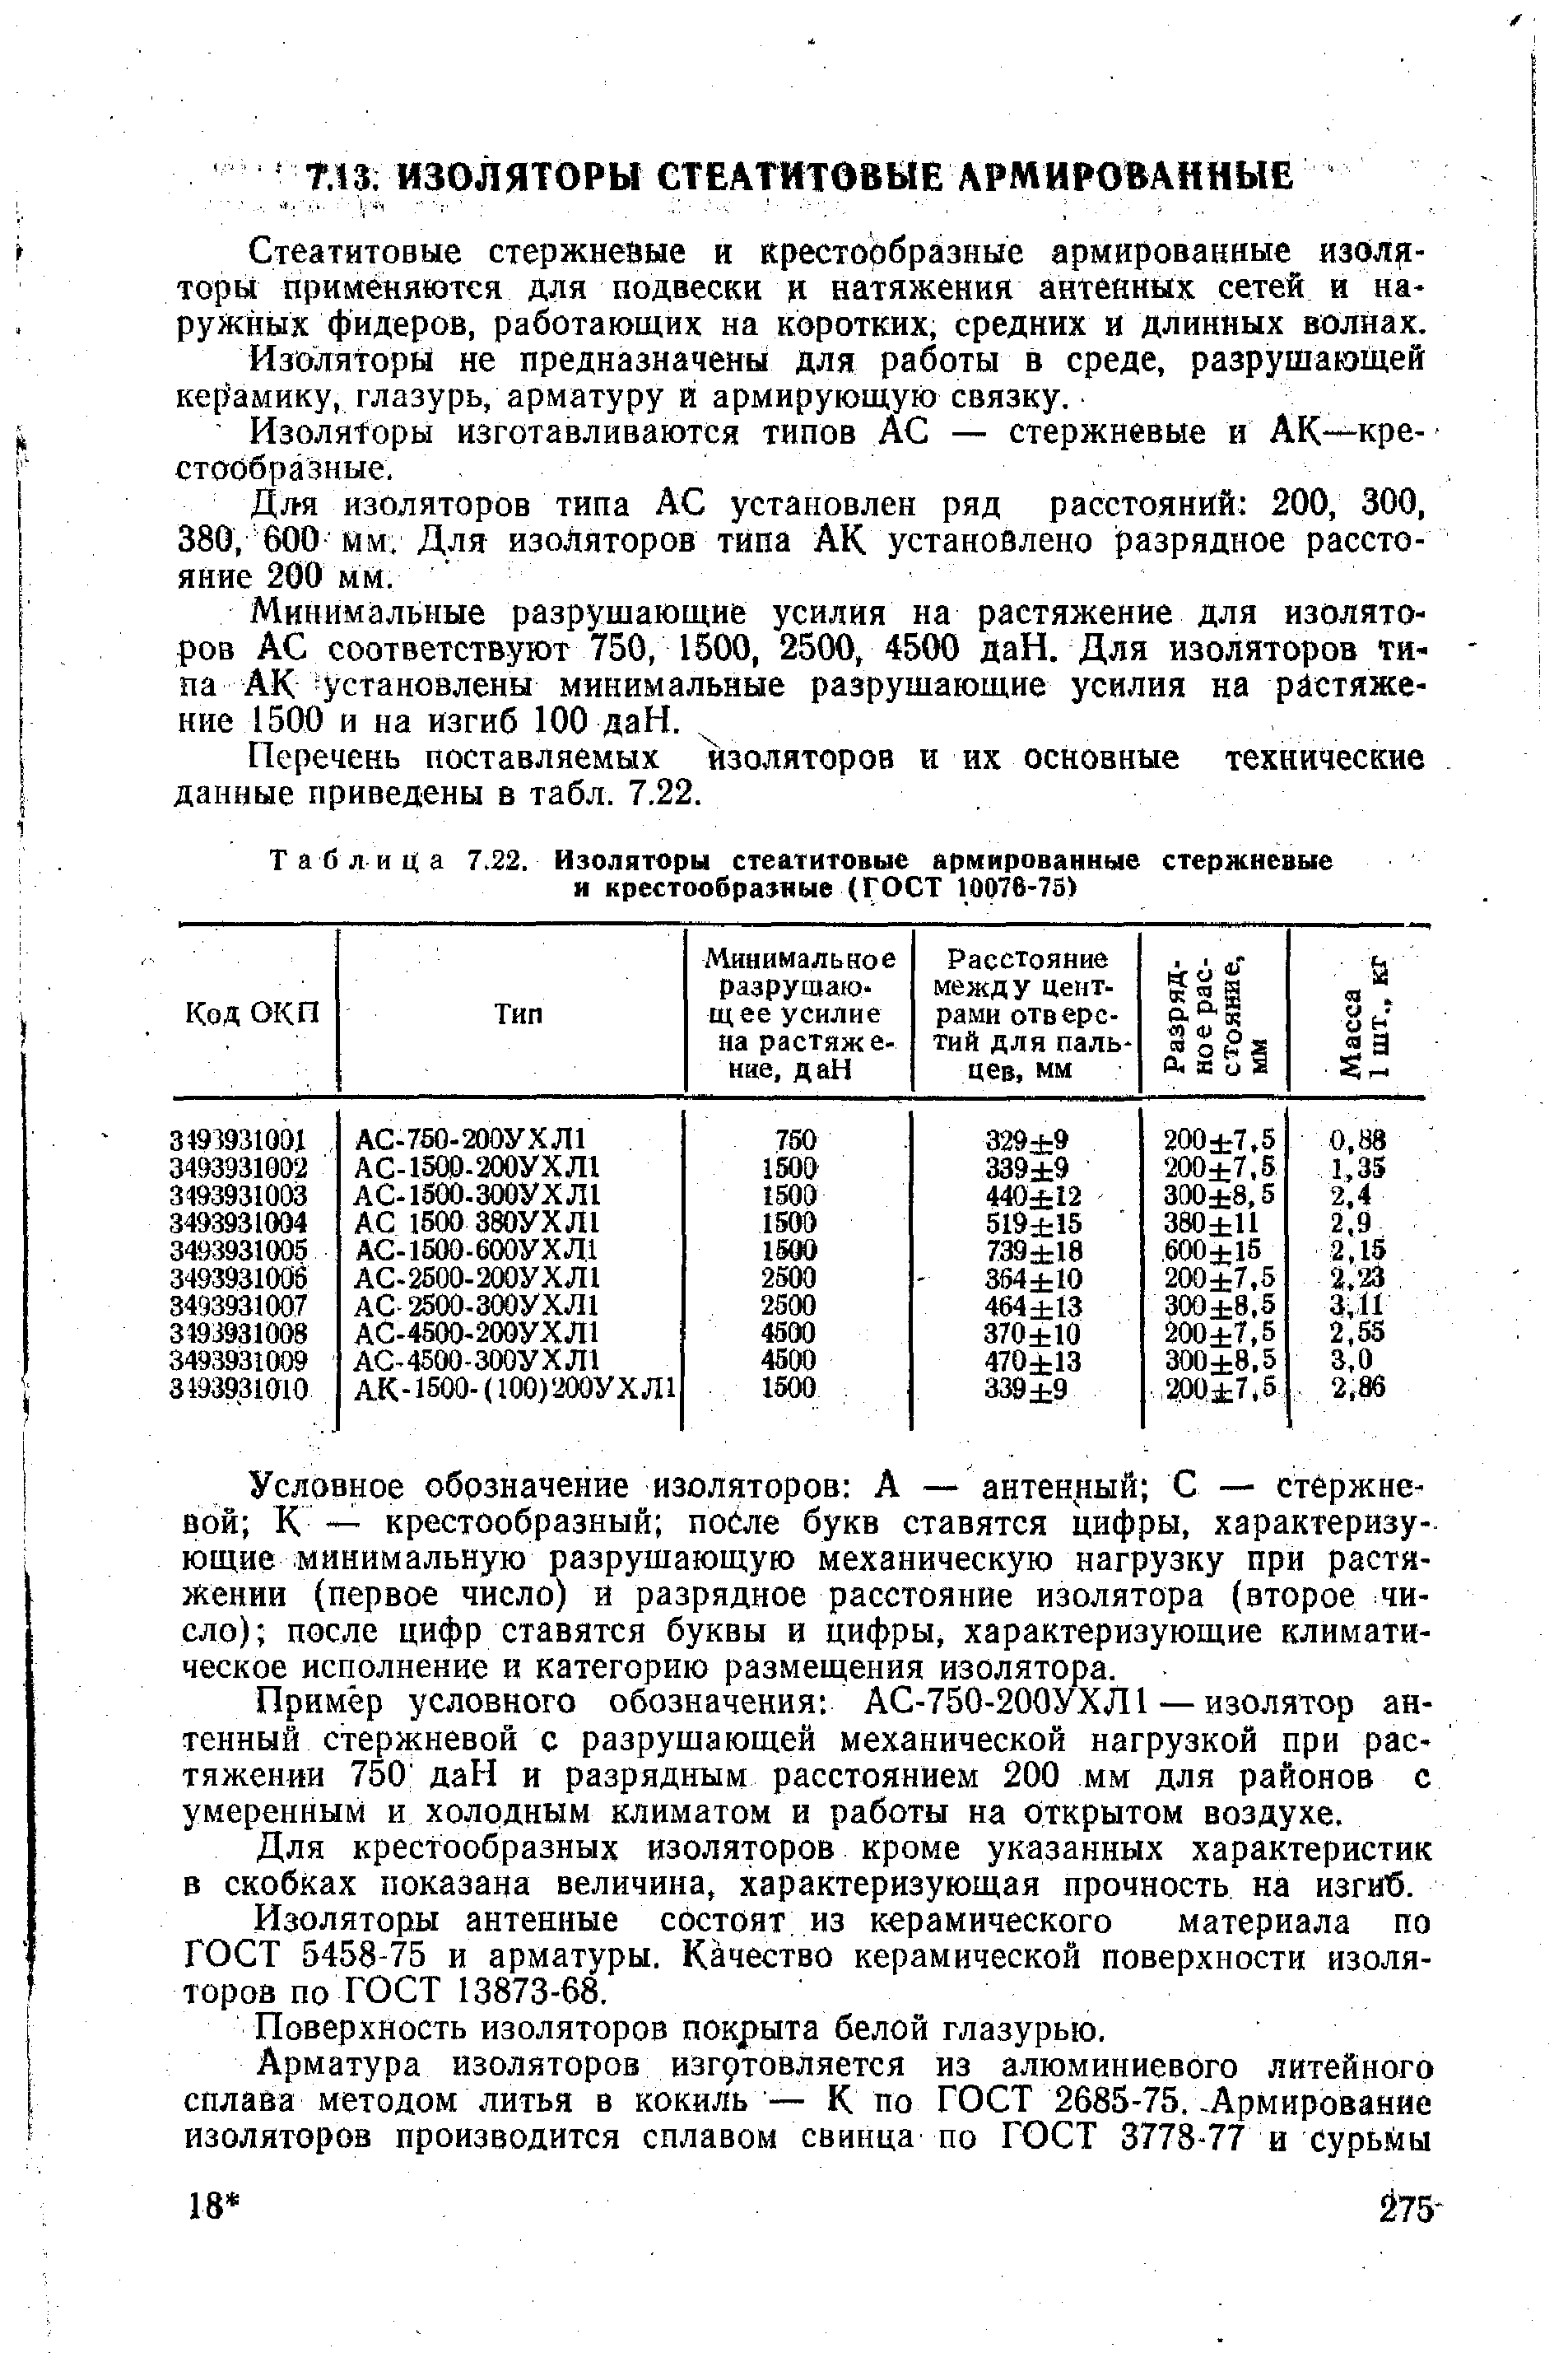 Таблица 7.22. Изоляторы стеатитовые армированные стержневые и крестообра ные (ГОСТ 10076-73)
